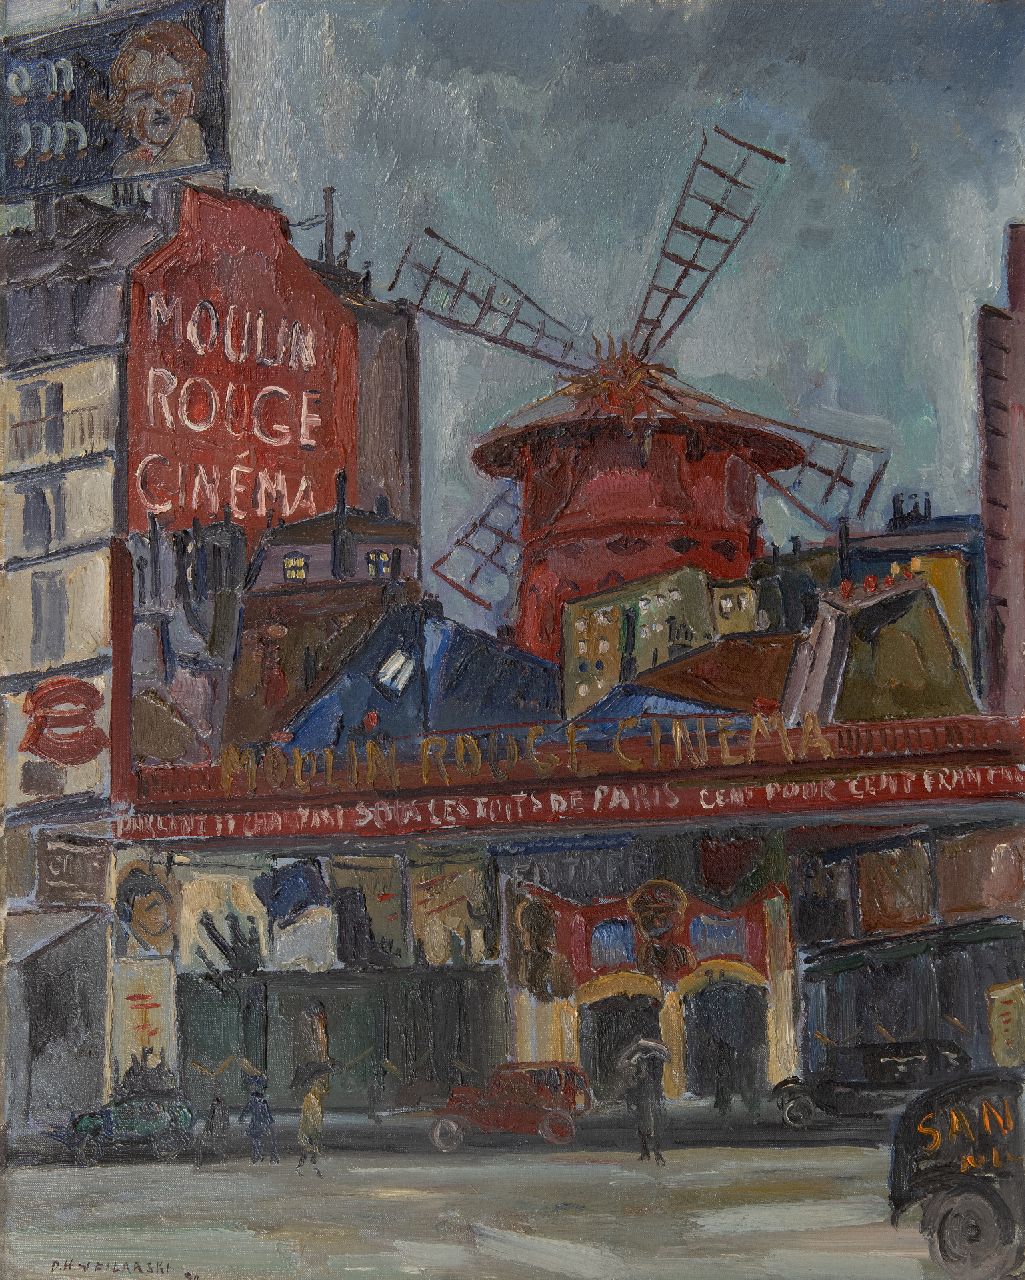 Filarski D.H.W.  | 'Dirk' Herman Willem Filarski | Schilderijen te koop aangeboden | Moulin Rouge, olieverf op doek 81,5 x 65,5 cm, gesigneerd linksonder en gedateerd '30